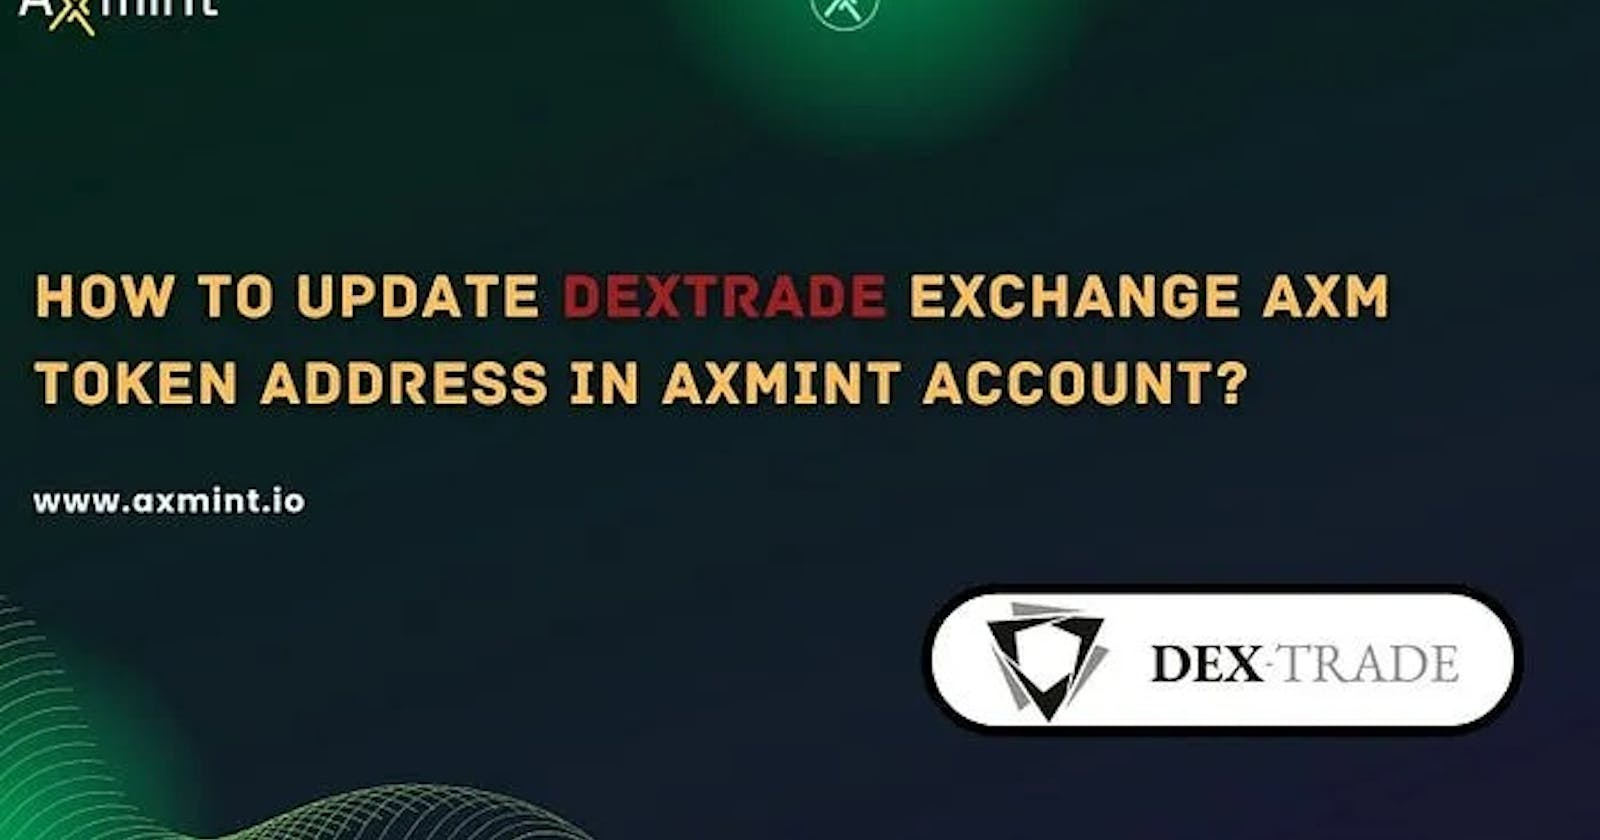 How to Update Dextrade Exchange AXM Token Address in Axmint Account?